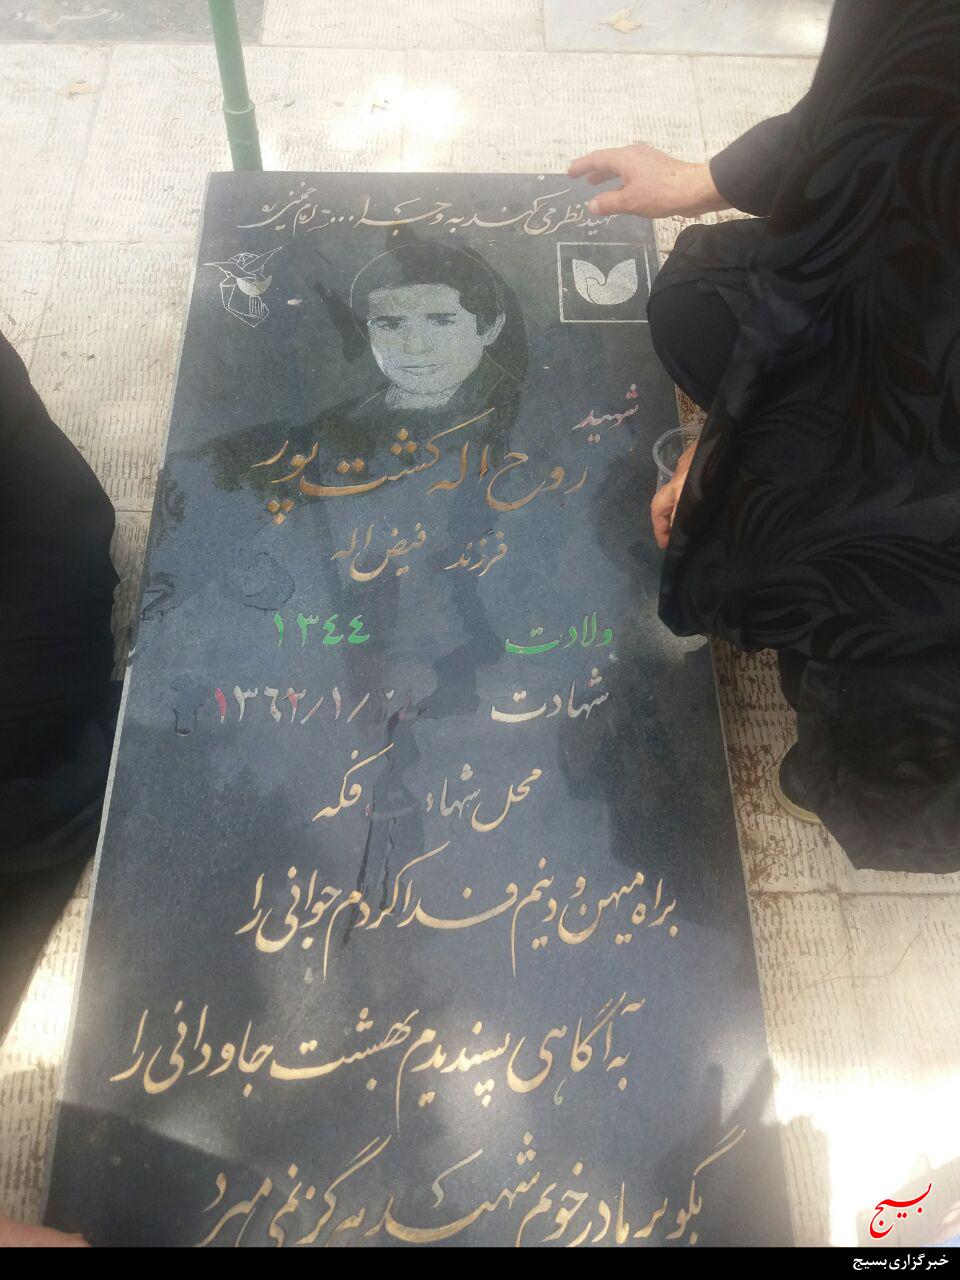 مادر شهید روح الله کشت پور در گلزار شهدای شهرک هیو شهرستان ساوجبلاغ به خاک سپرده شد.